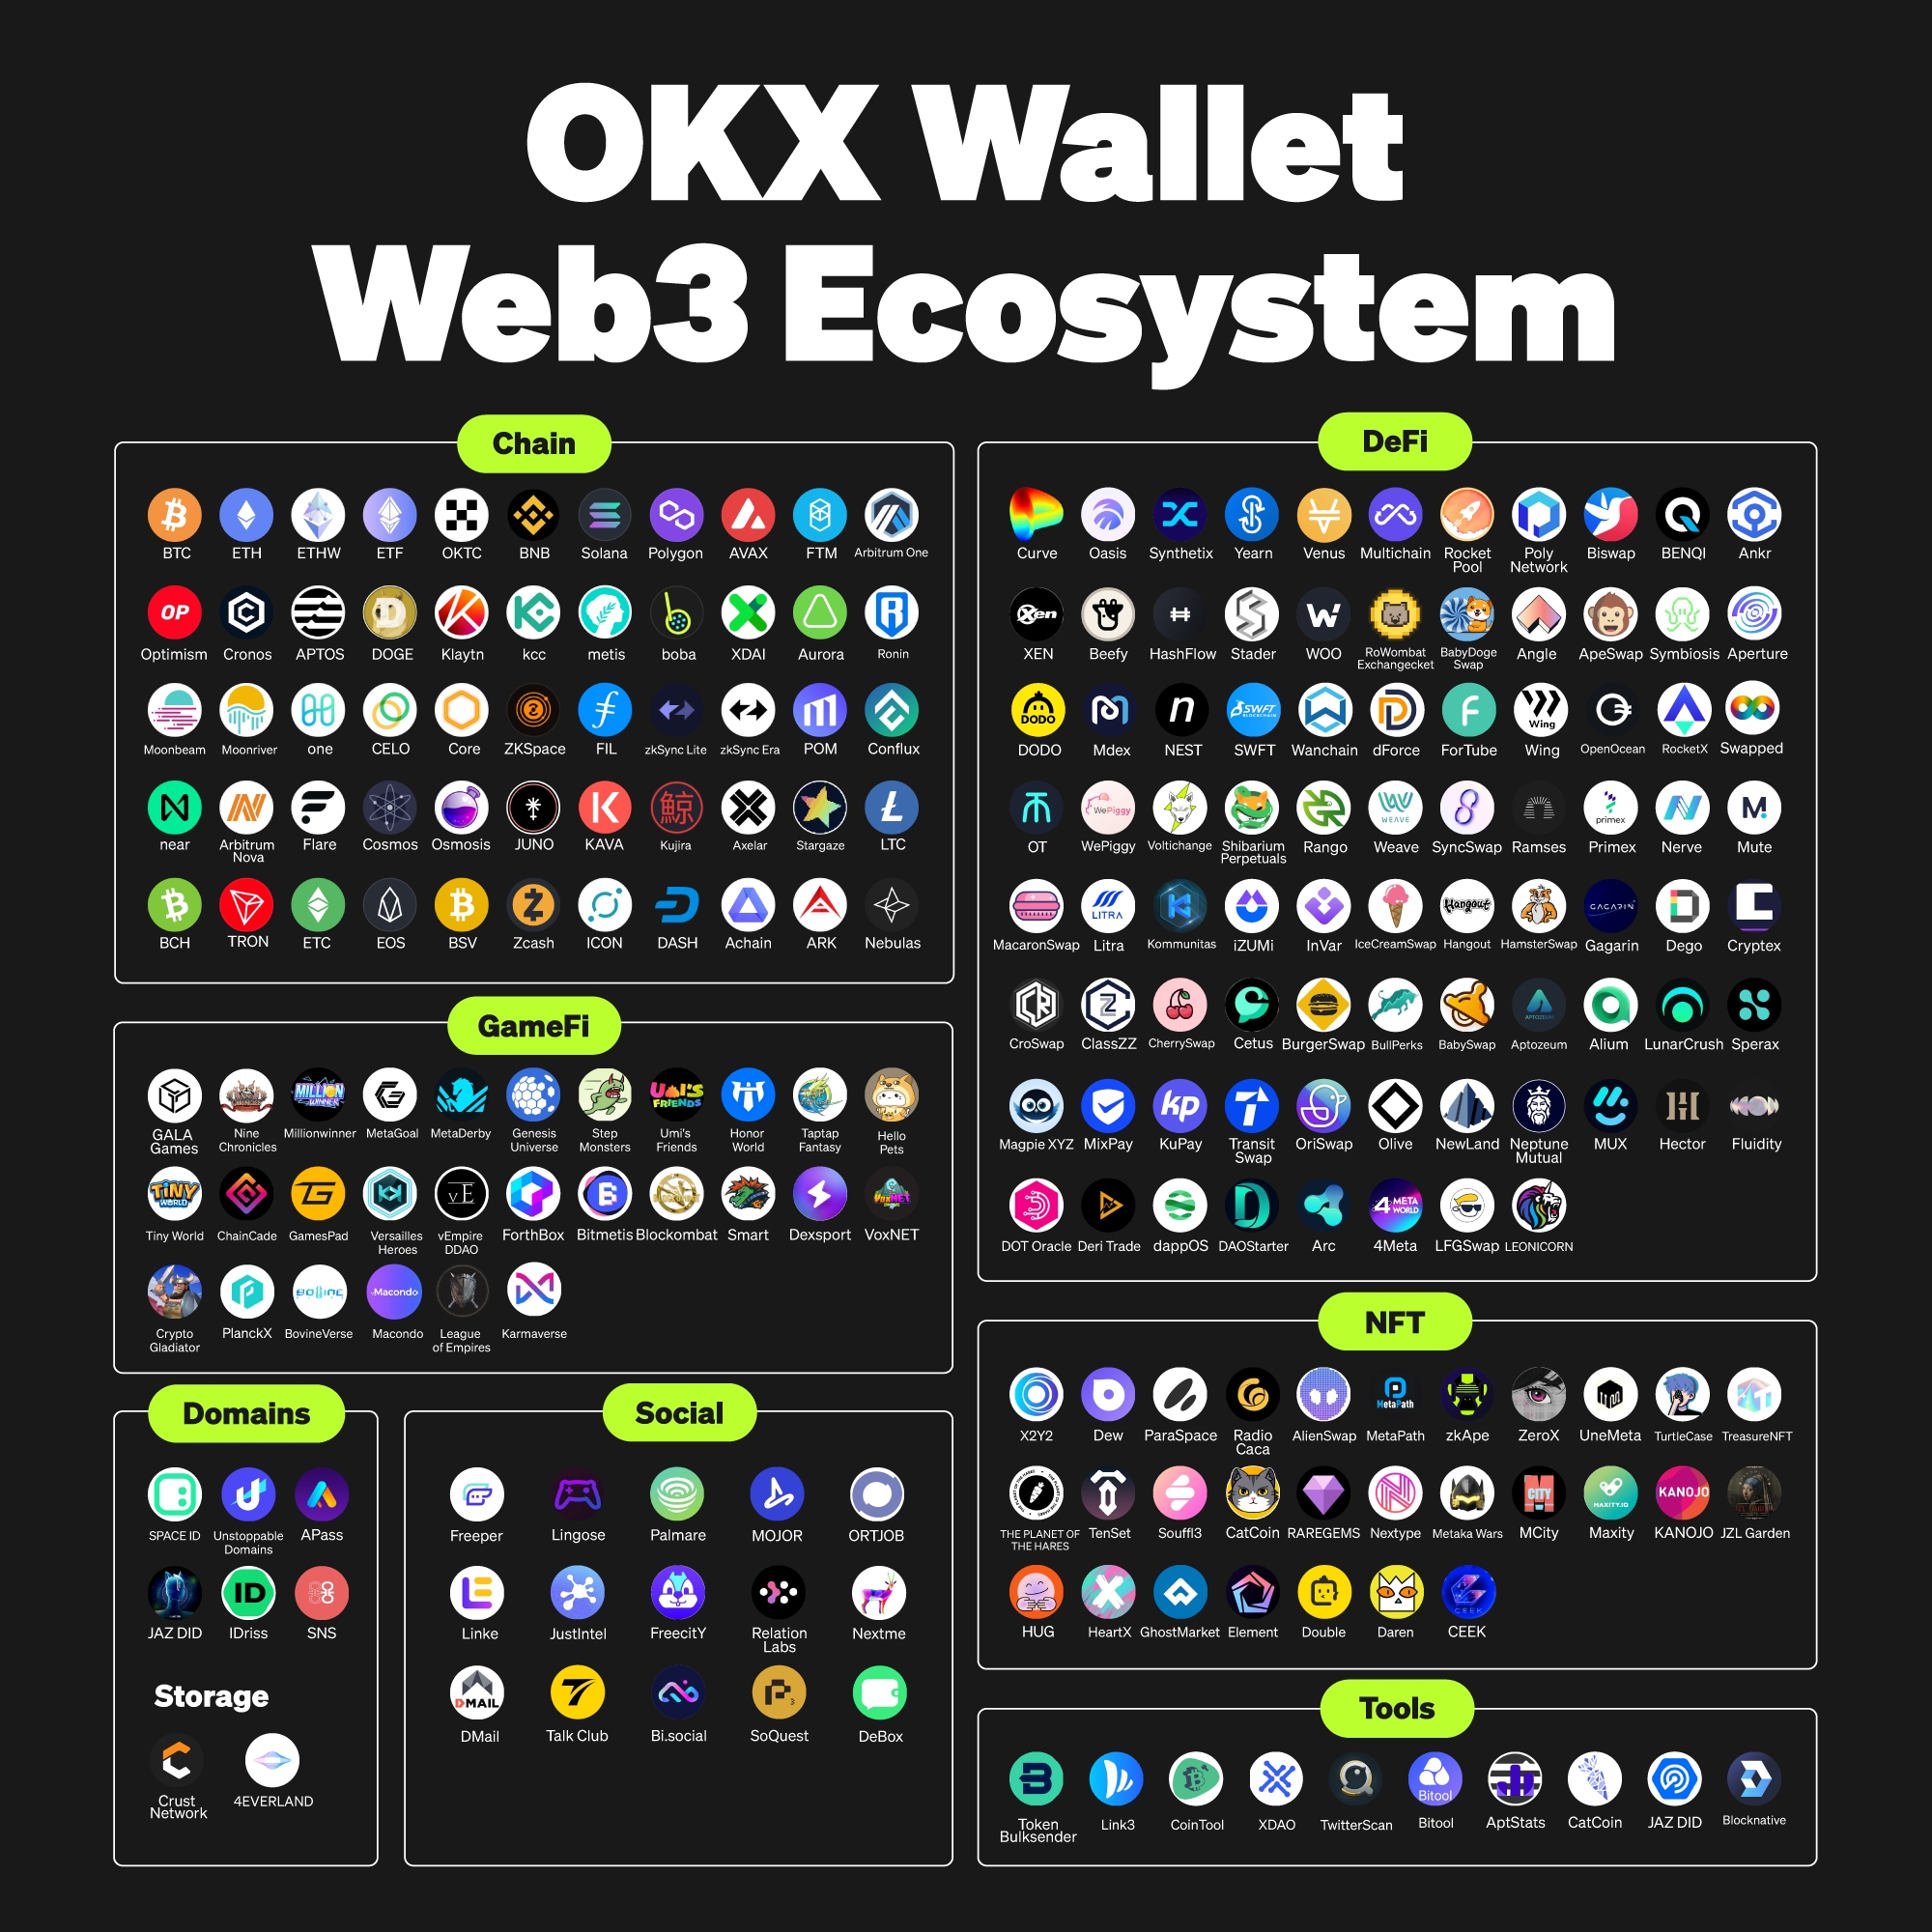 oax wallet